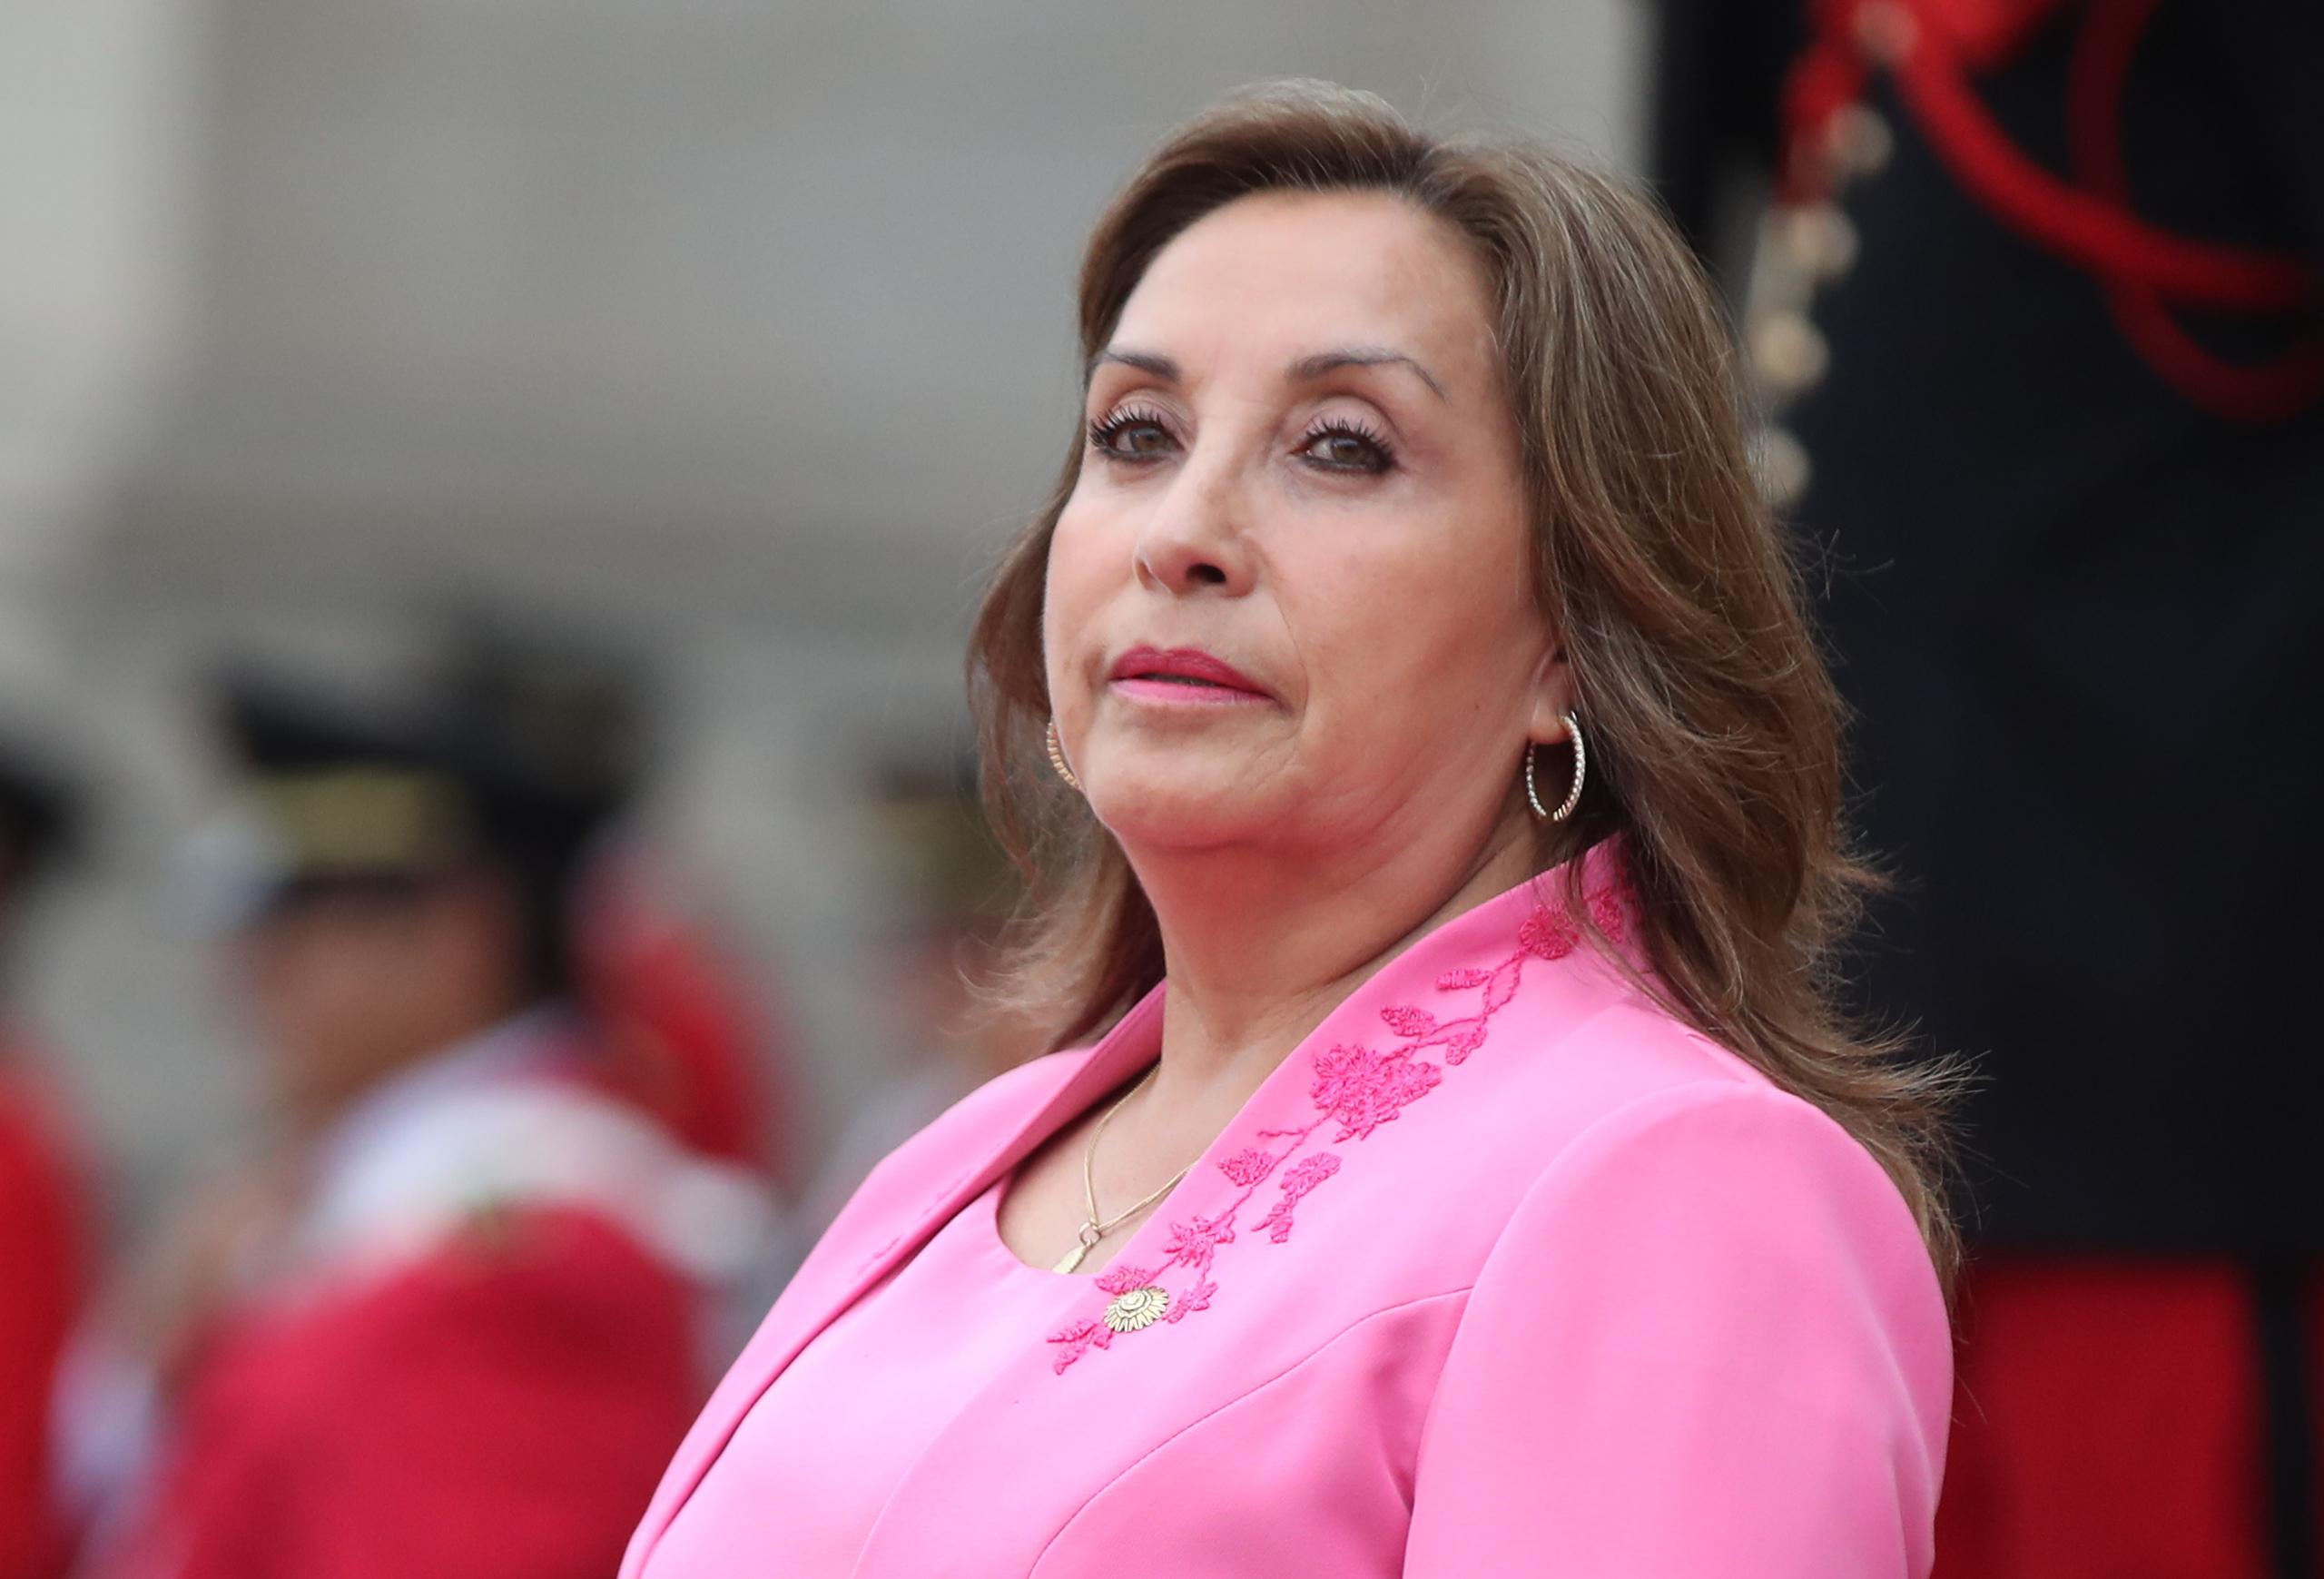 Durante el incidente, que fue captado en video, una mujer logró burlar la seguridad de la presidenta de Perú y le haló los cabellos.